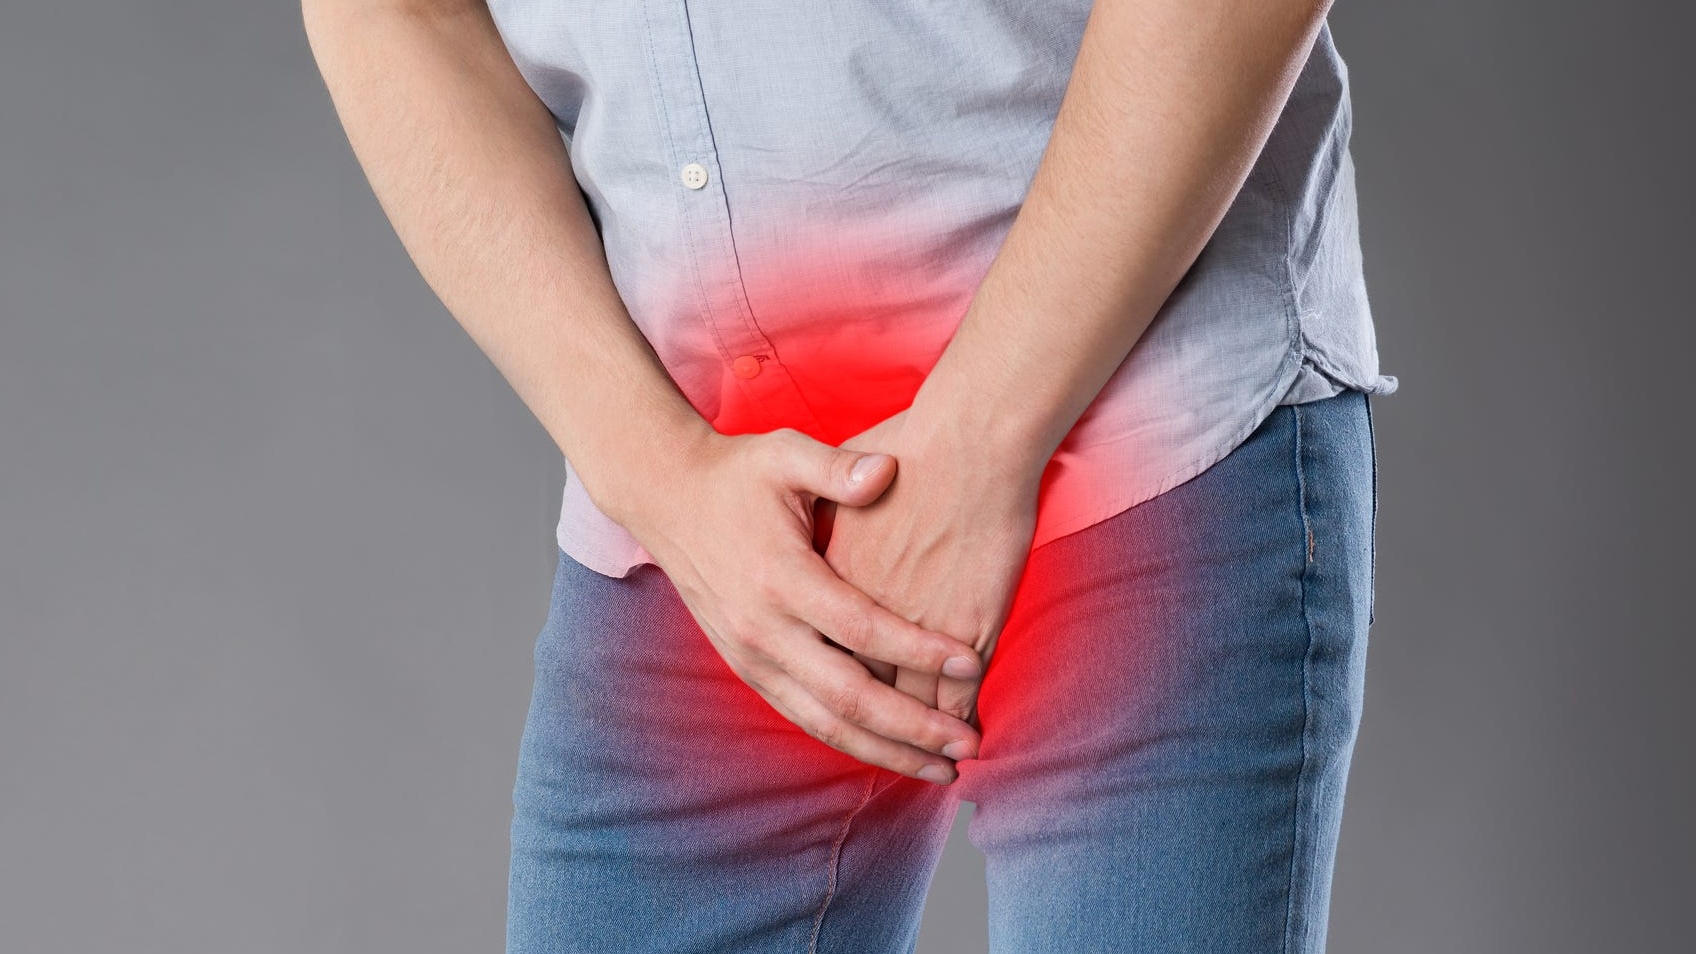 Tại sao có thể xảy ra đau tinh hoàn bên trái và bụng dưới?
